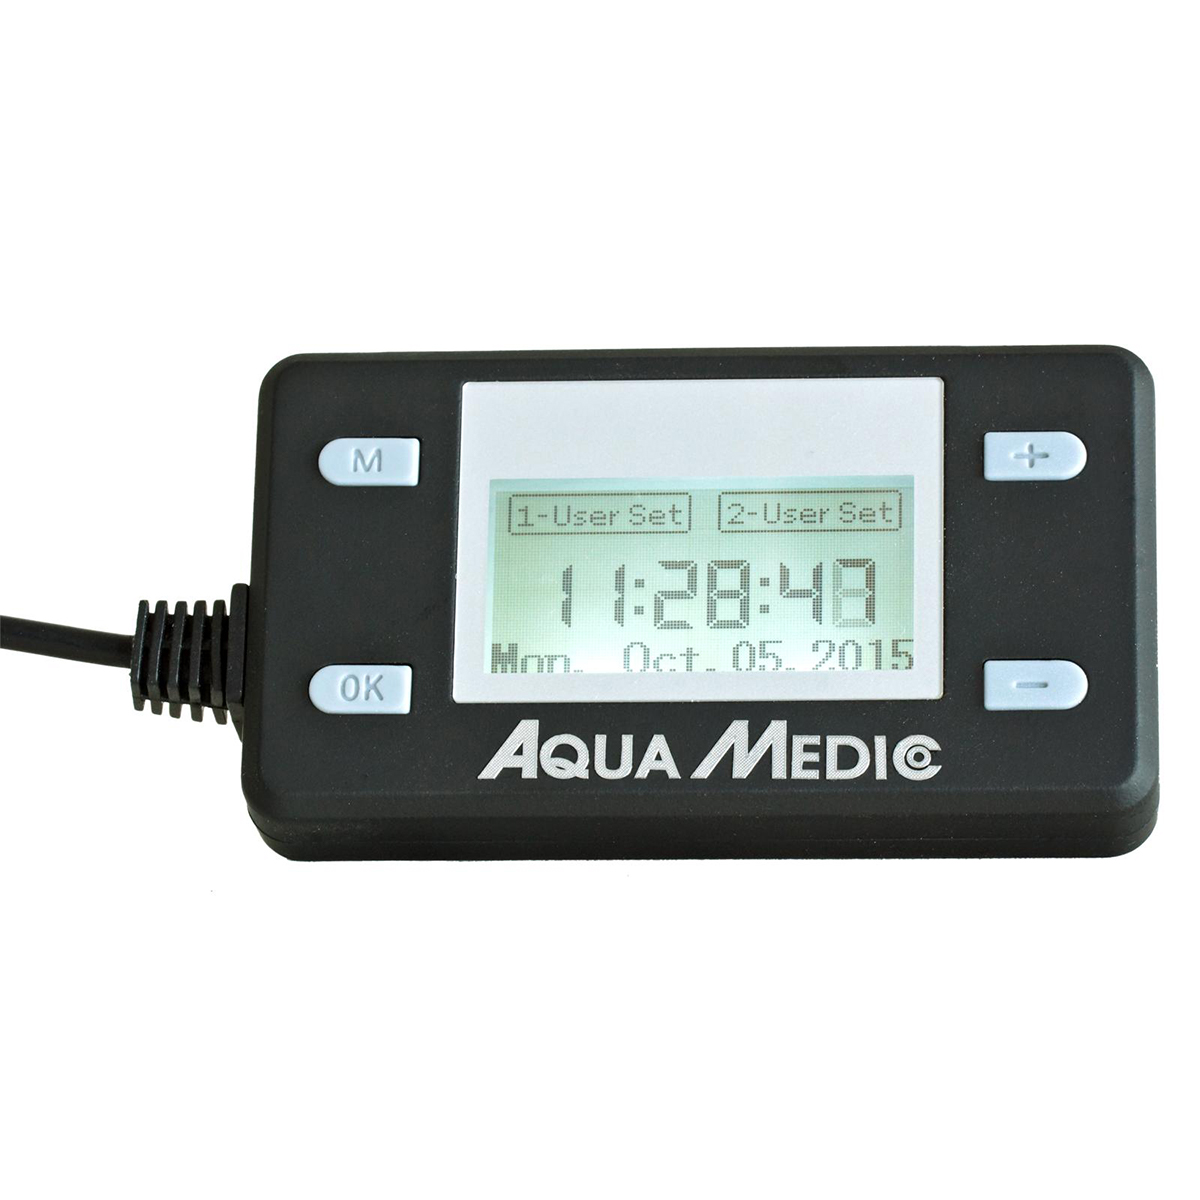 Aqua Medic Ocean Light LED Control von Aqua Medic